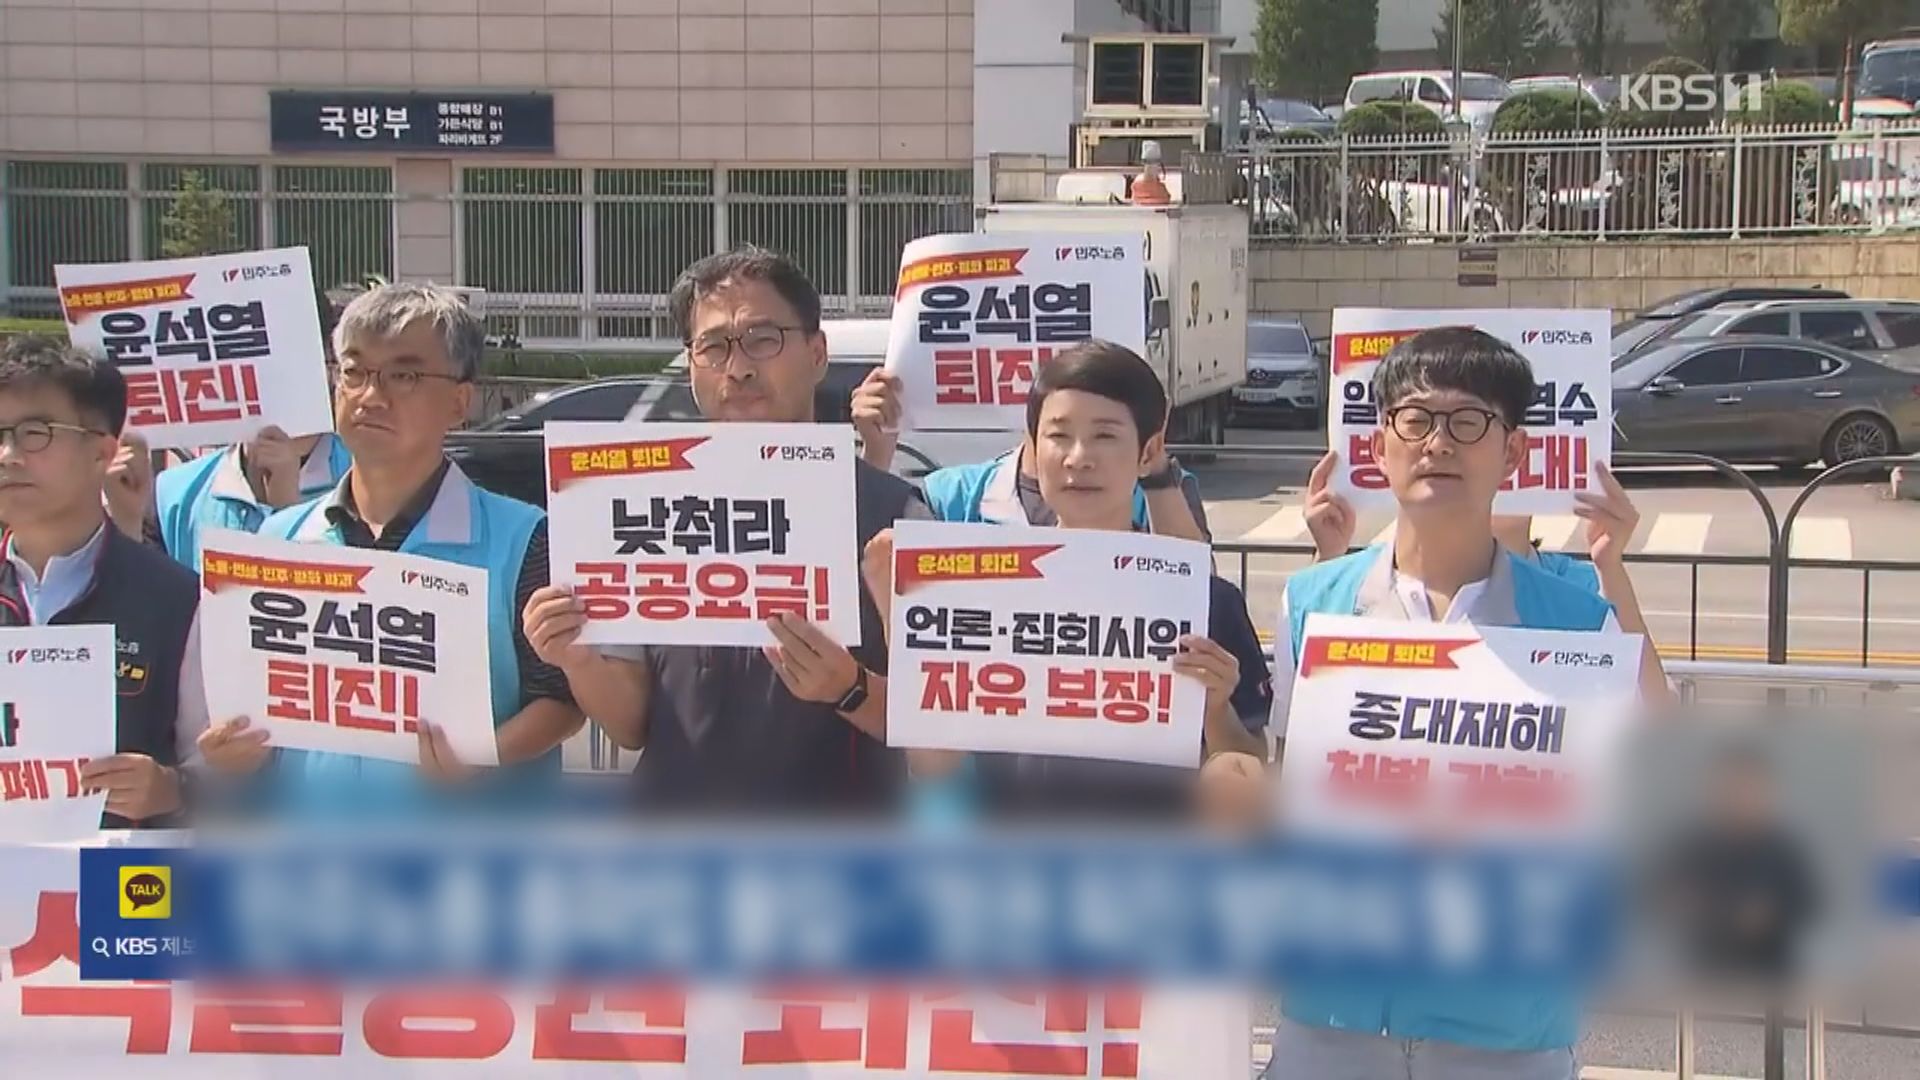 南韓最大工會組織發起兩周罷工 要求尹錫悅下台